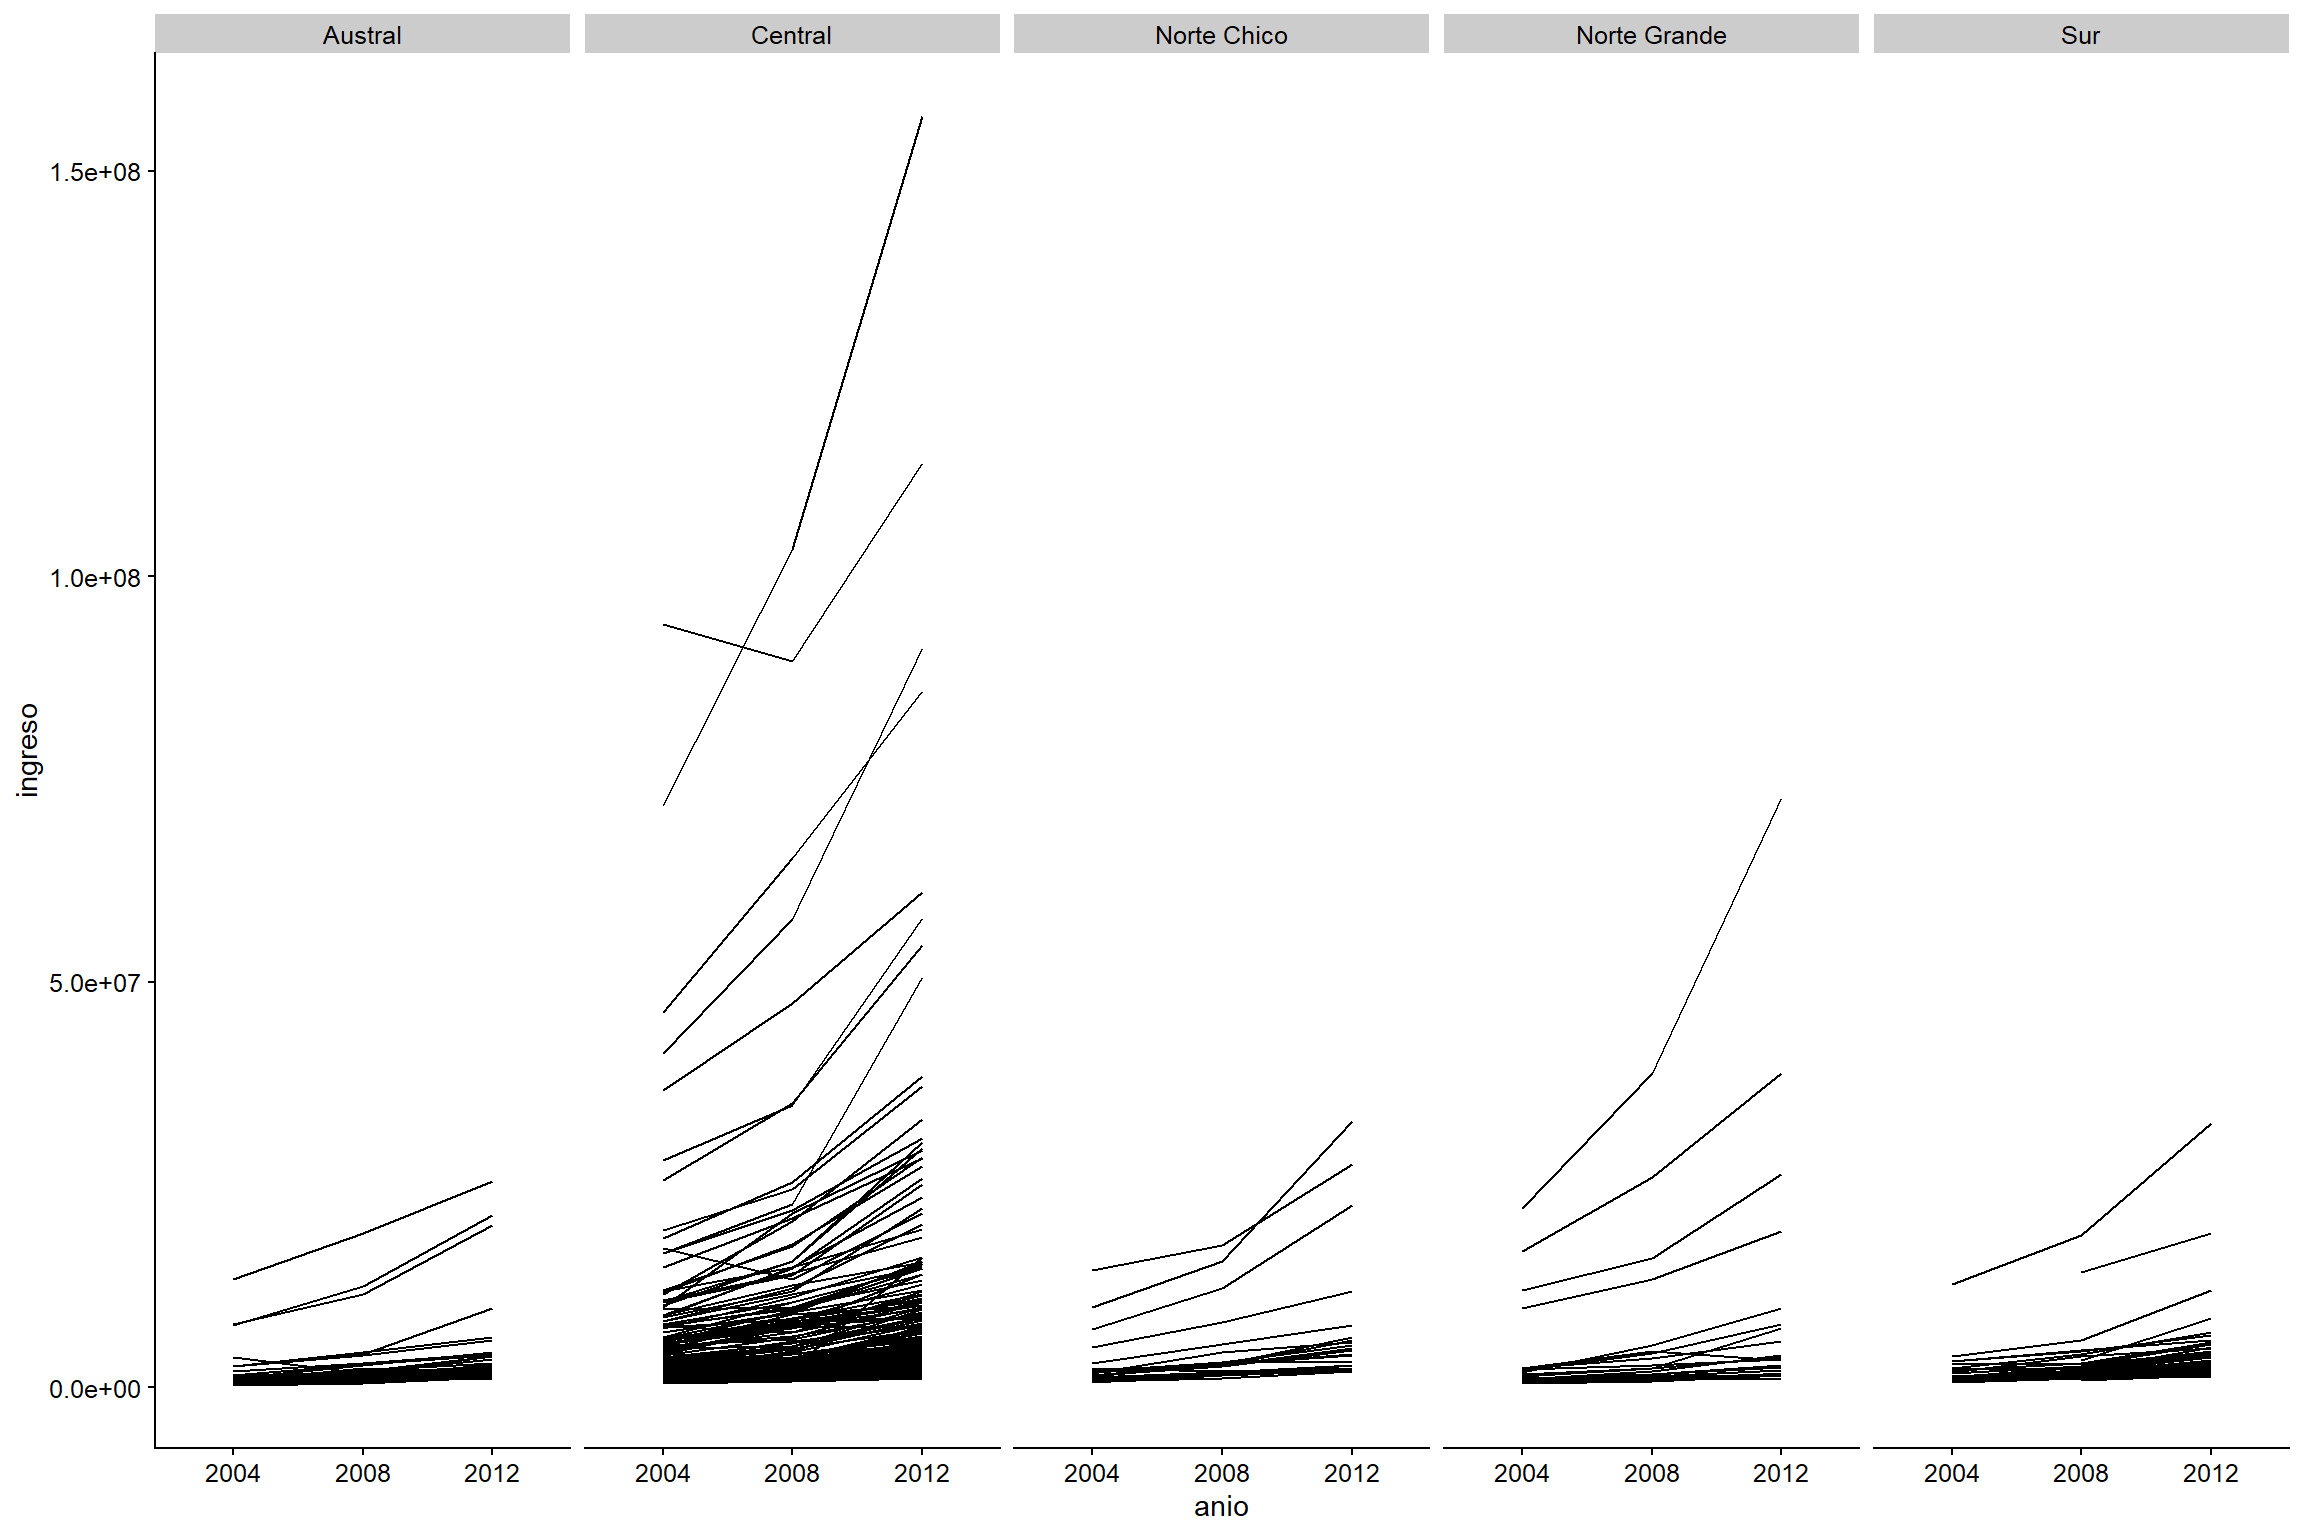  Evolución anual de los ingresos por municipio enfrentado por zona.